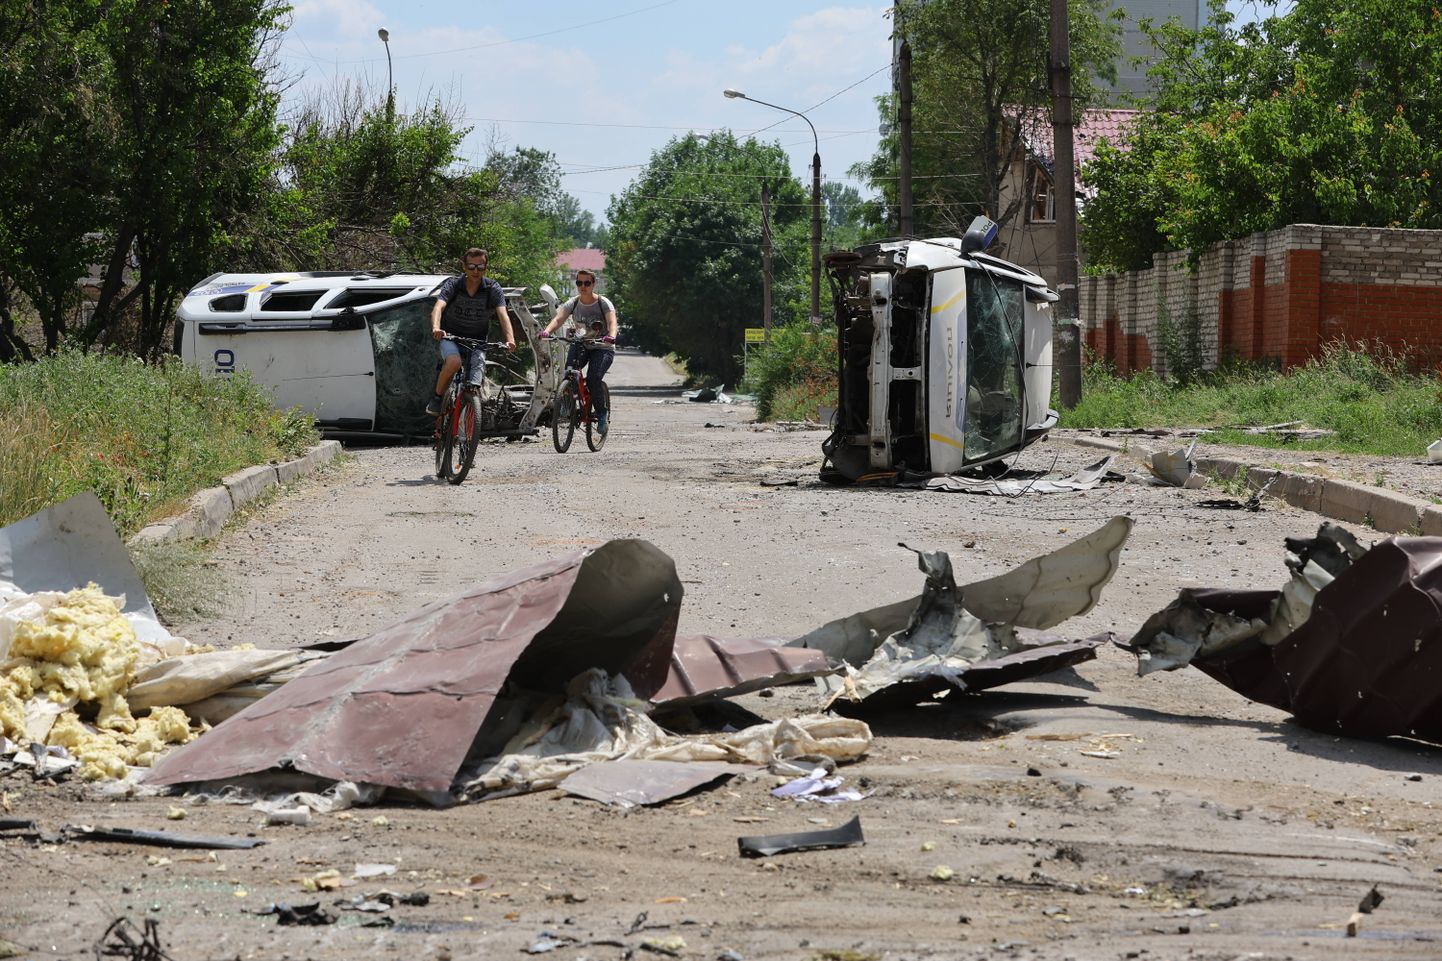 Жители на велосипедах проезжают мимо разбитой полицейской машины в Лисичанске (Луганская область), 4 июля 2022 года.